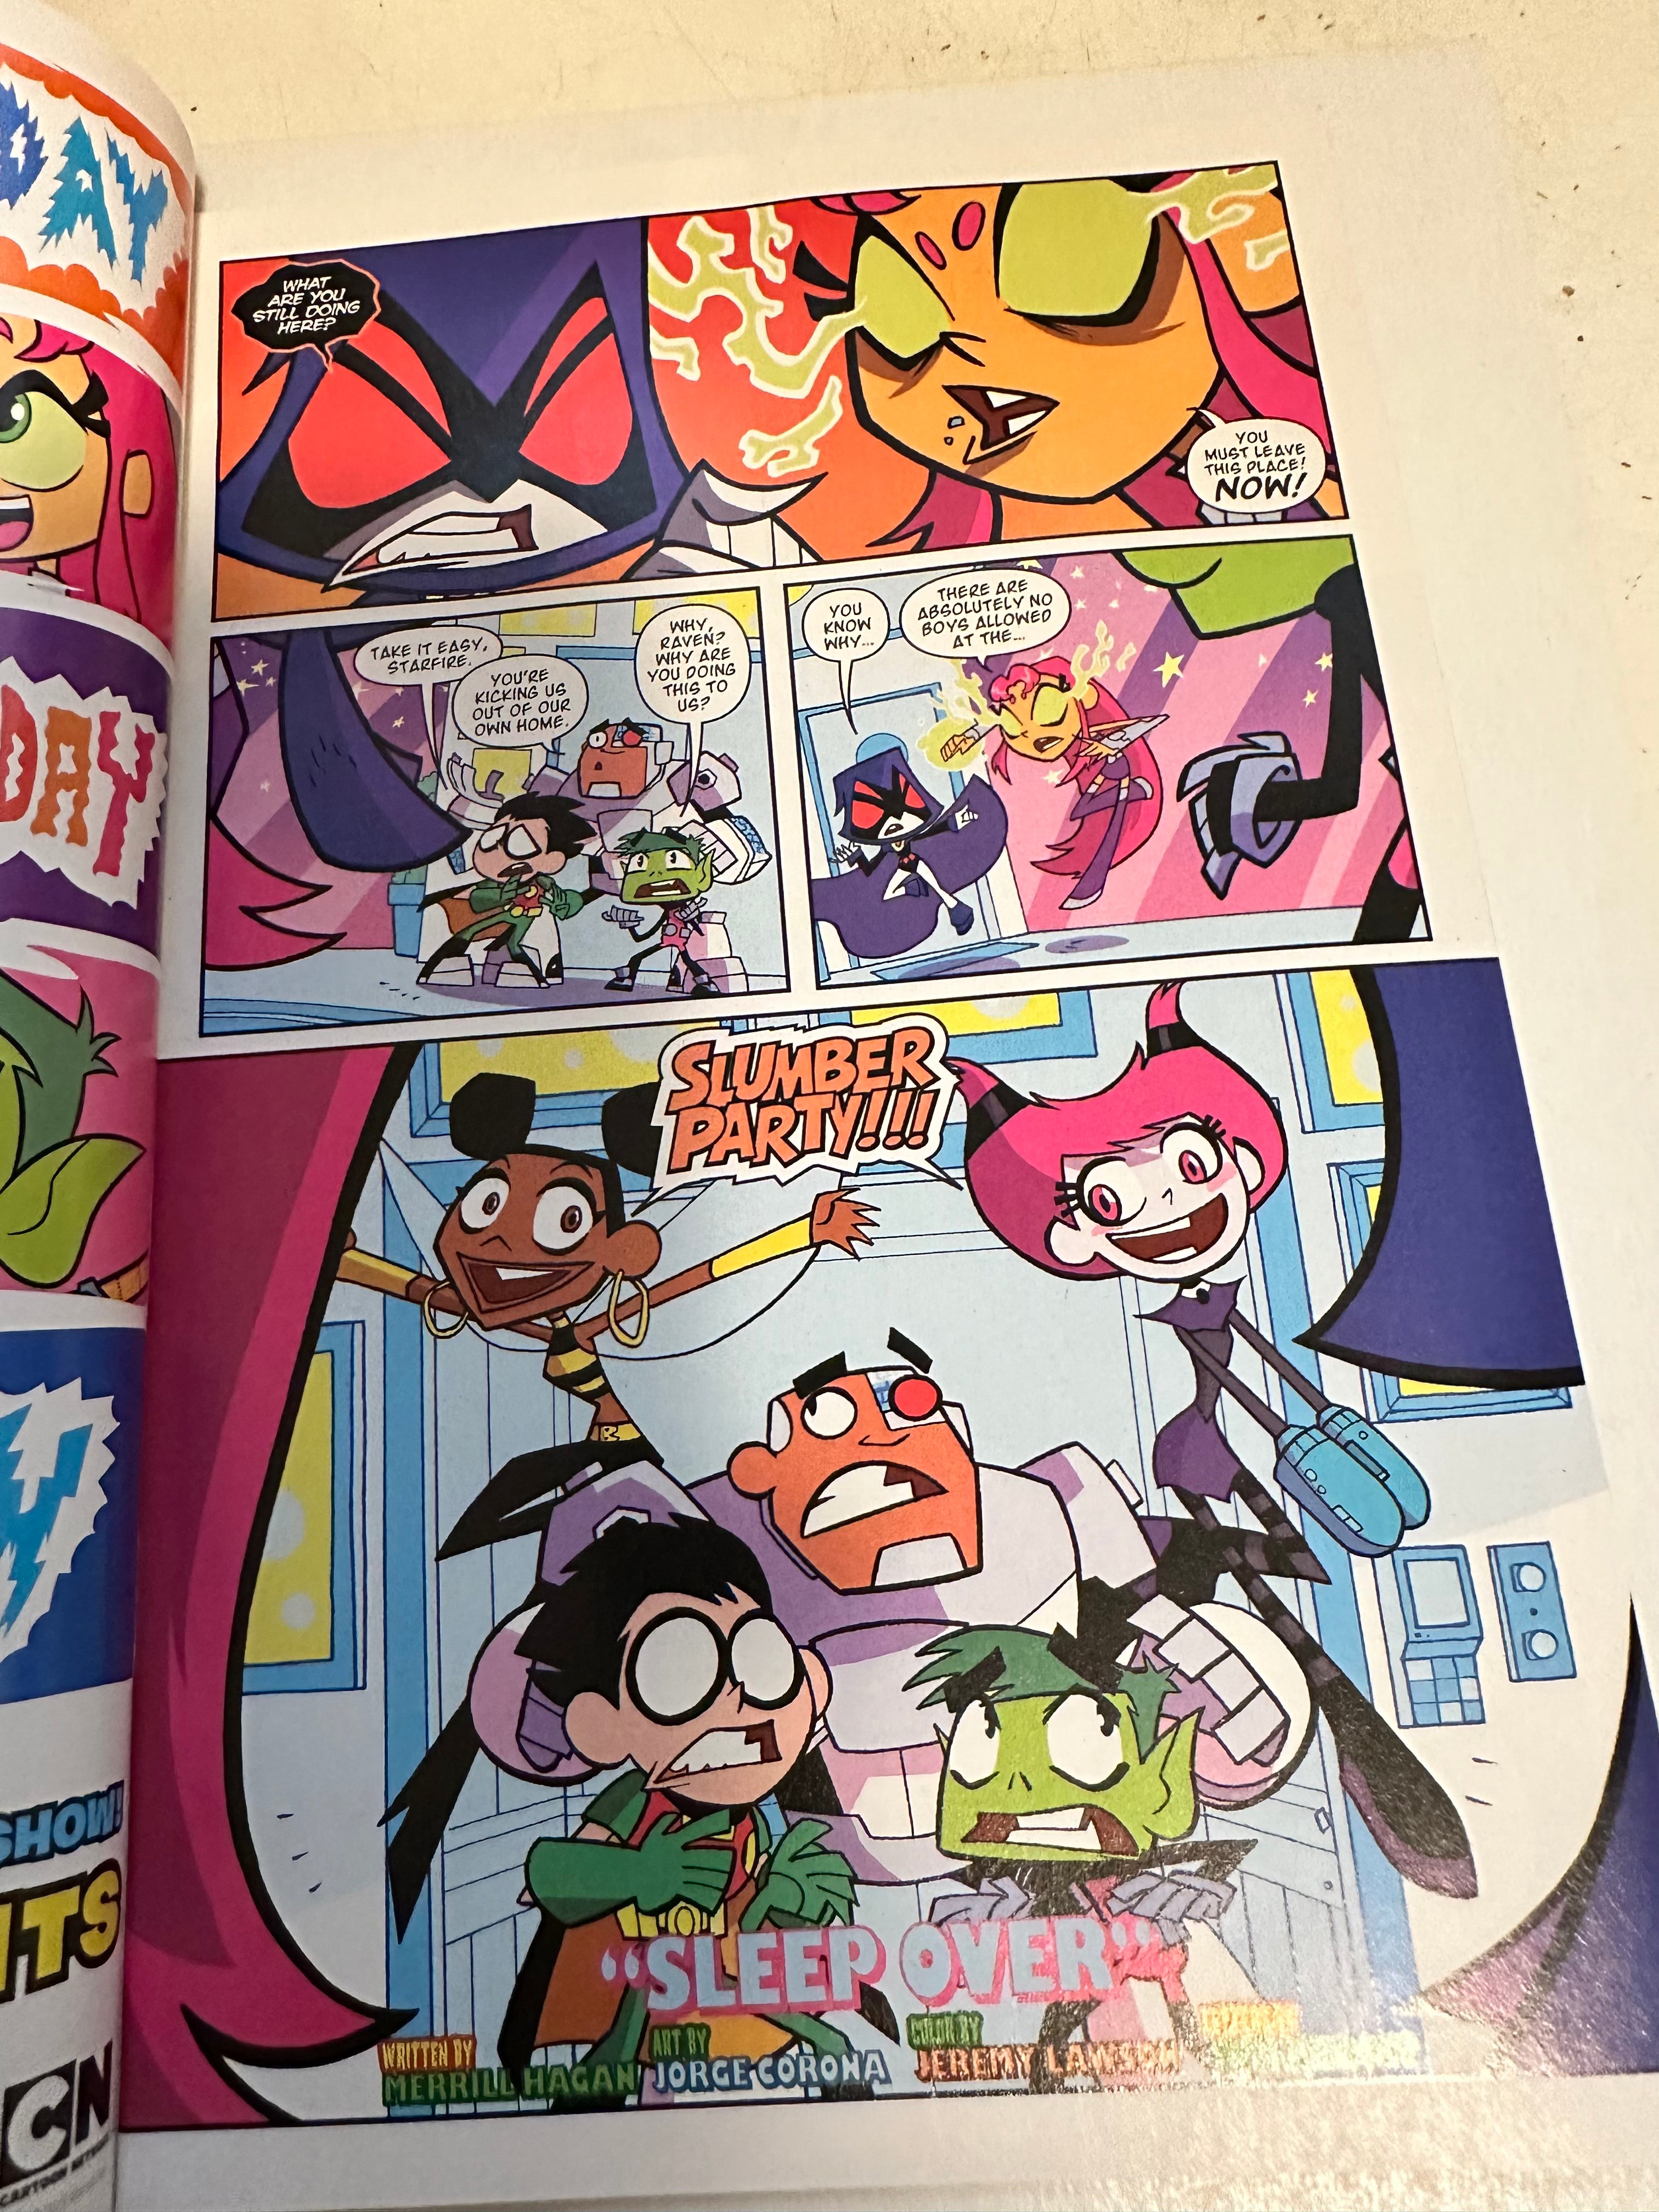 Teen Titans Go #1 high grade condition free comic book day comic book